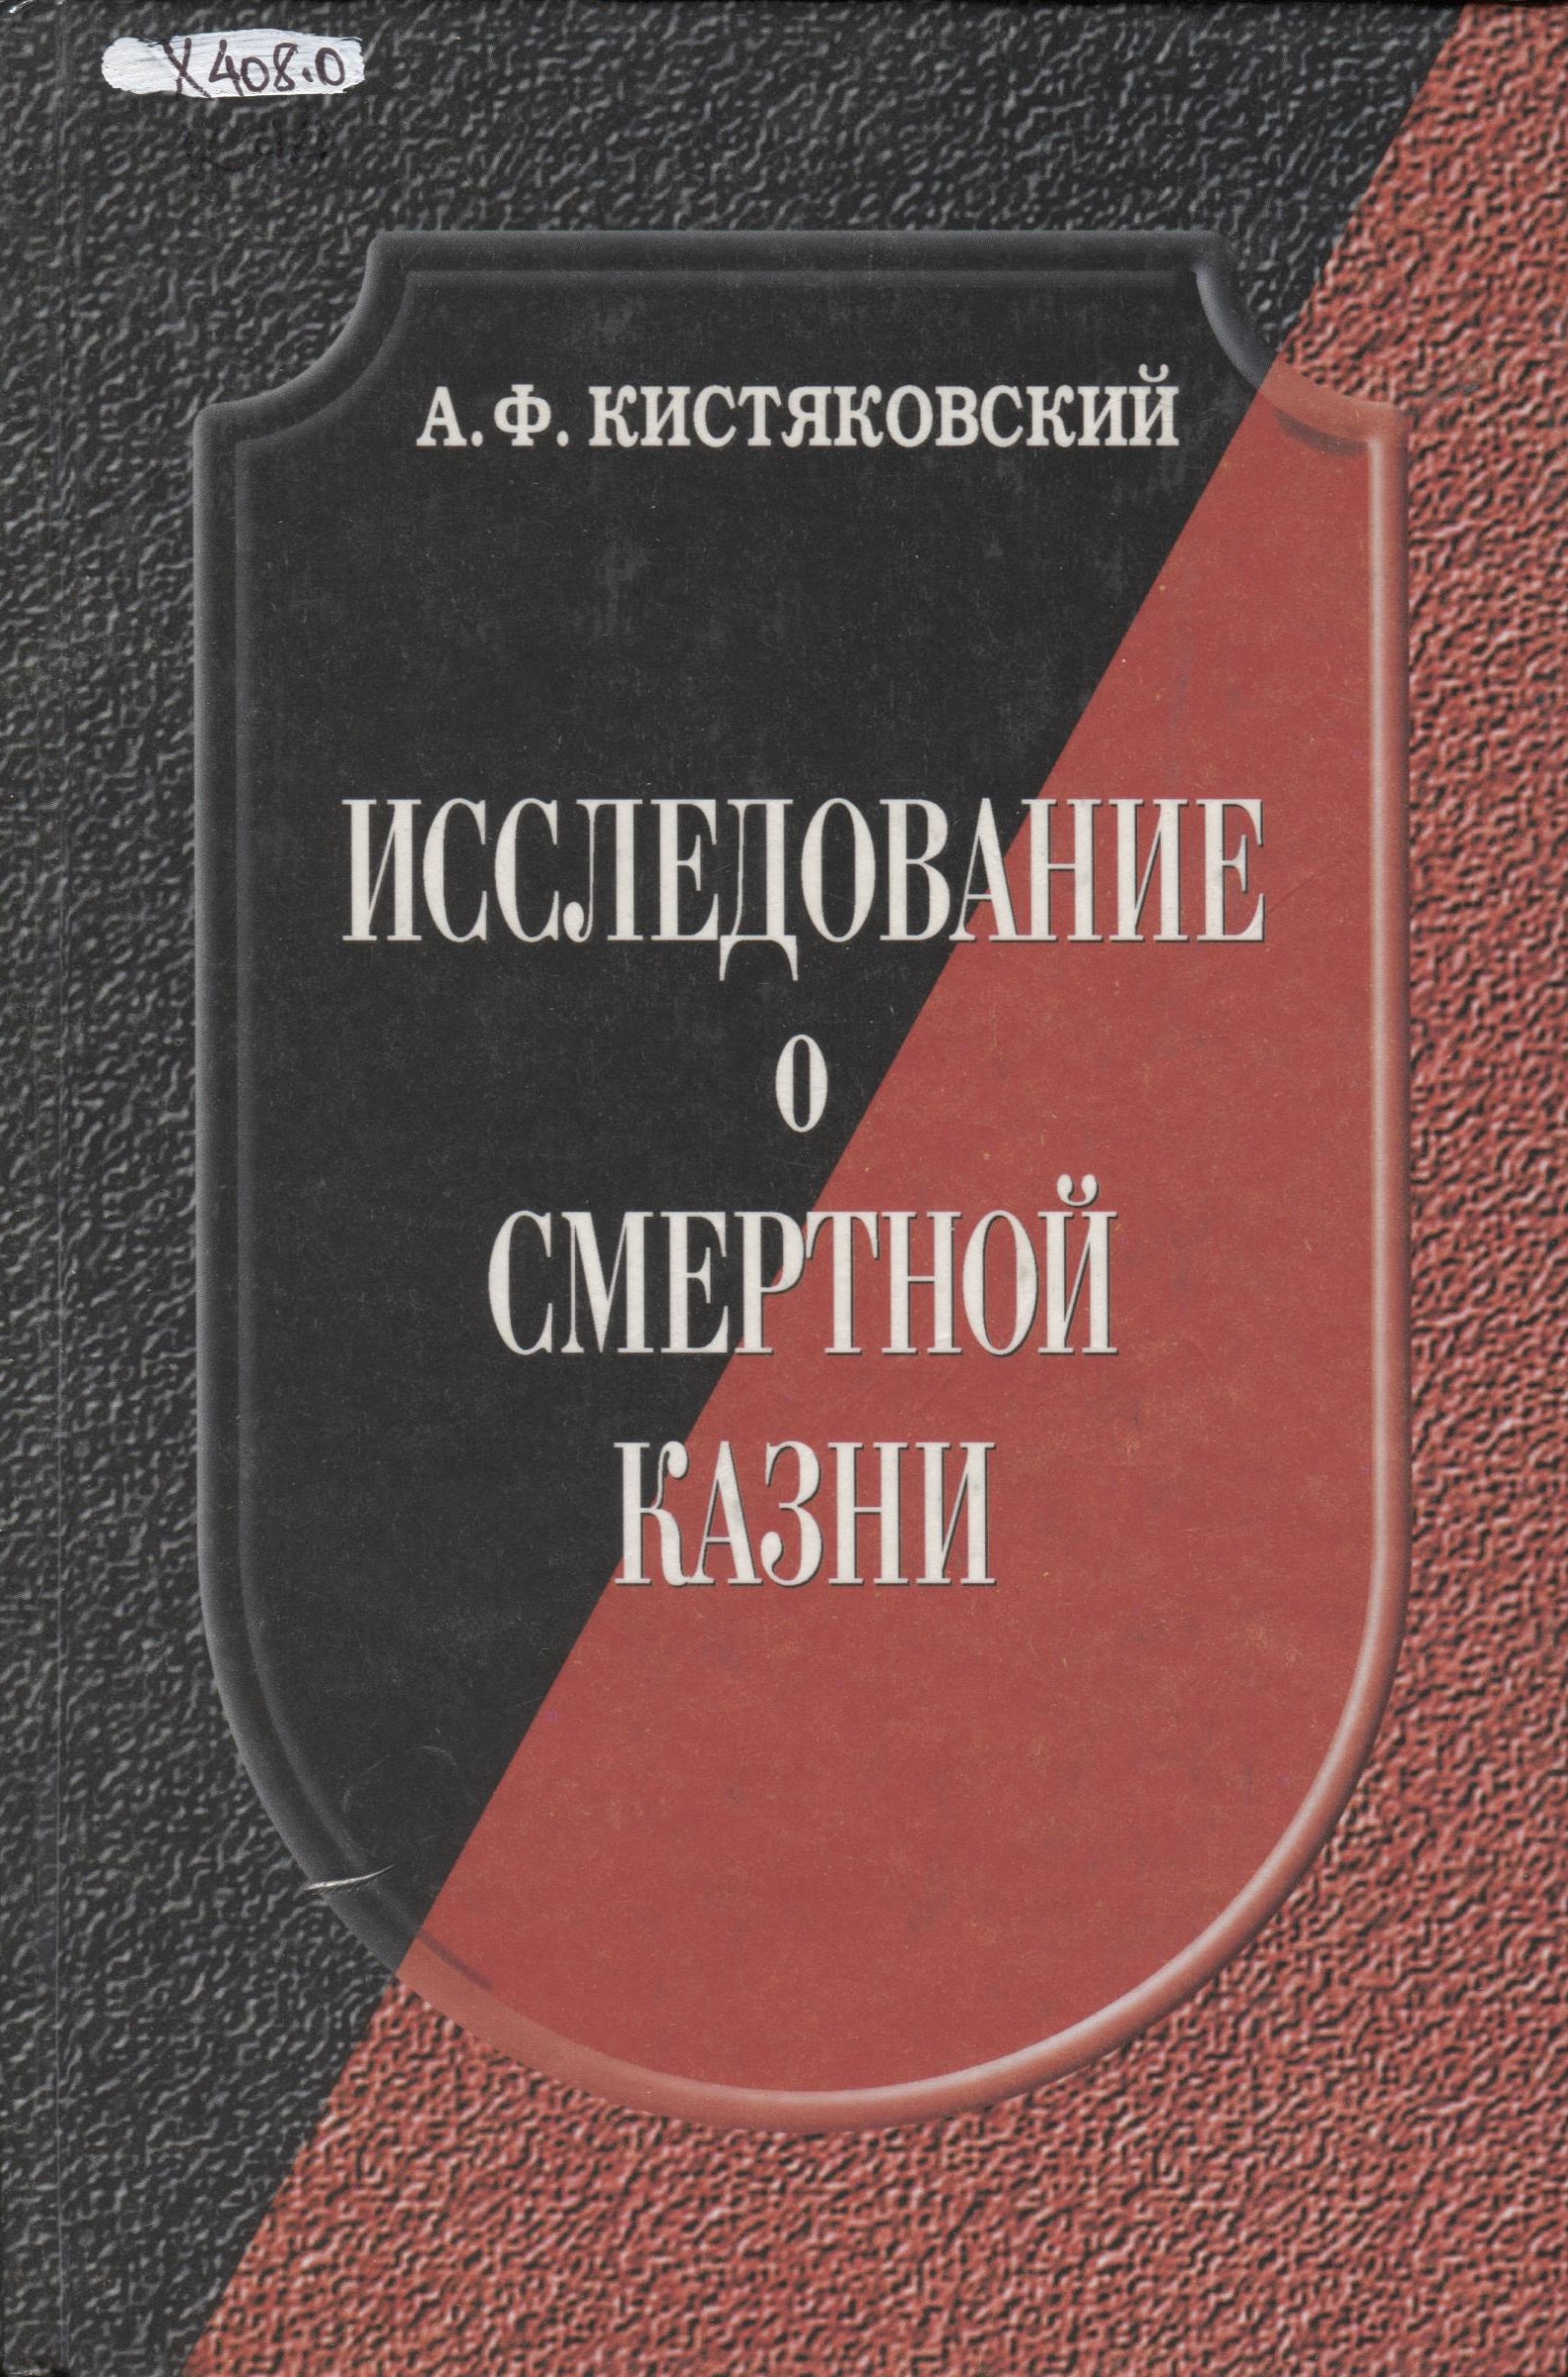 Реферат: Кистяковский, Александр Фёдорович